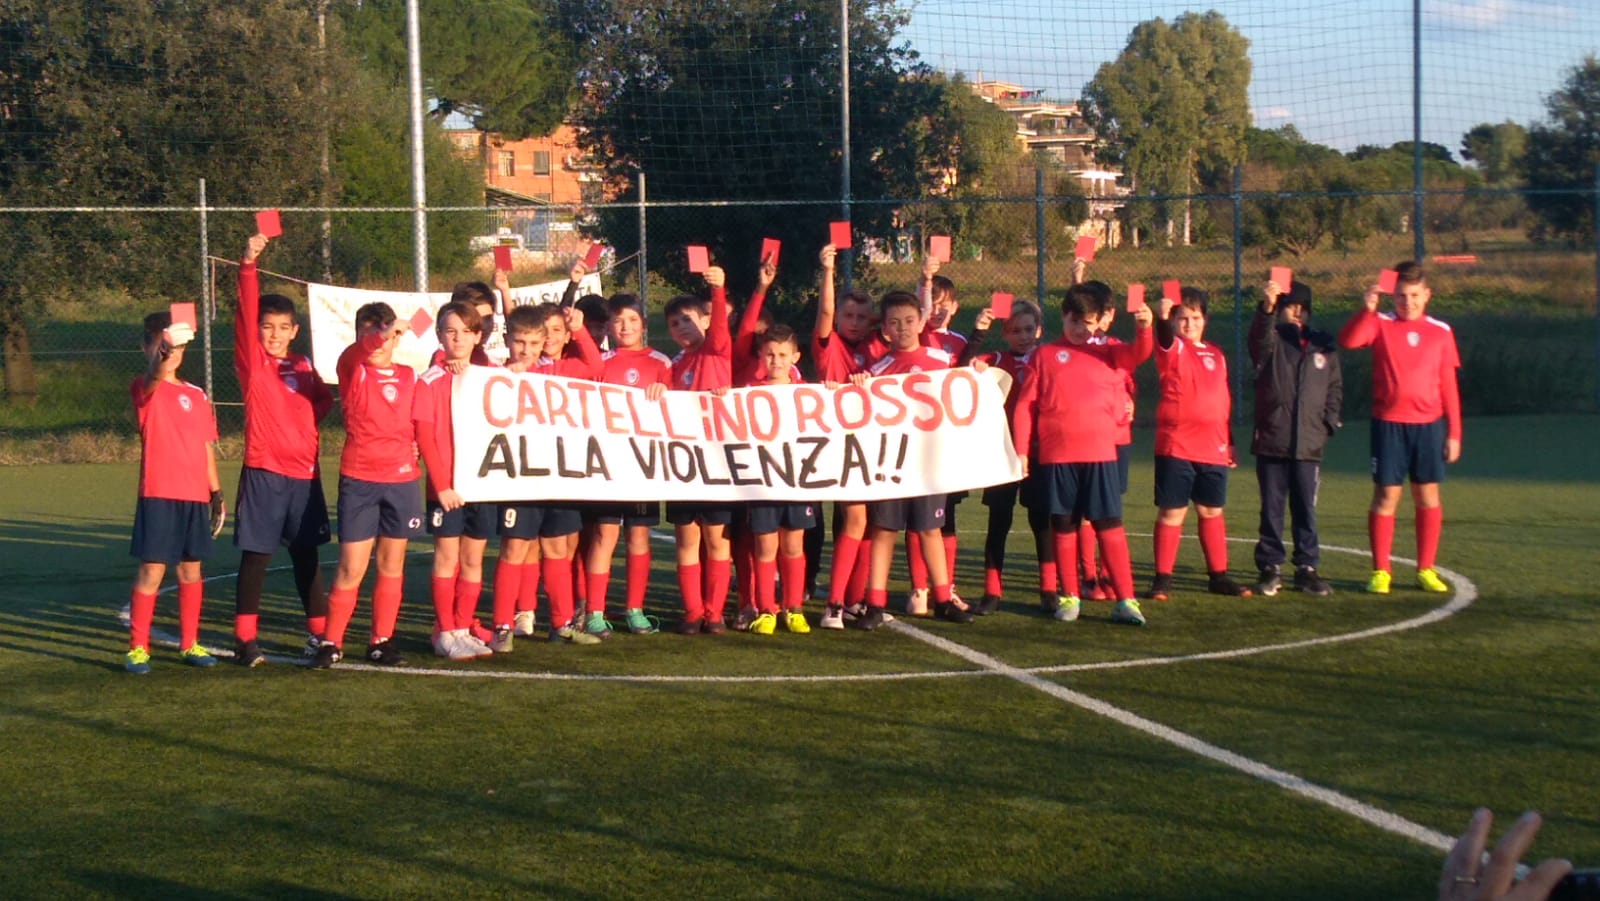 Cartellino rosso alla violenza dai ragazzi dell’Alessandrino Calcio